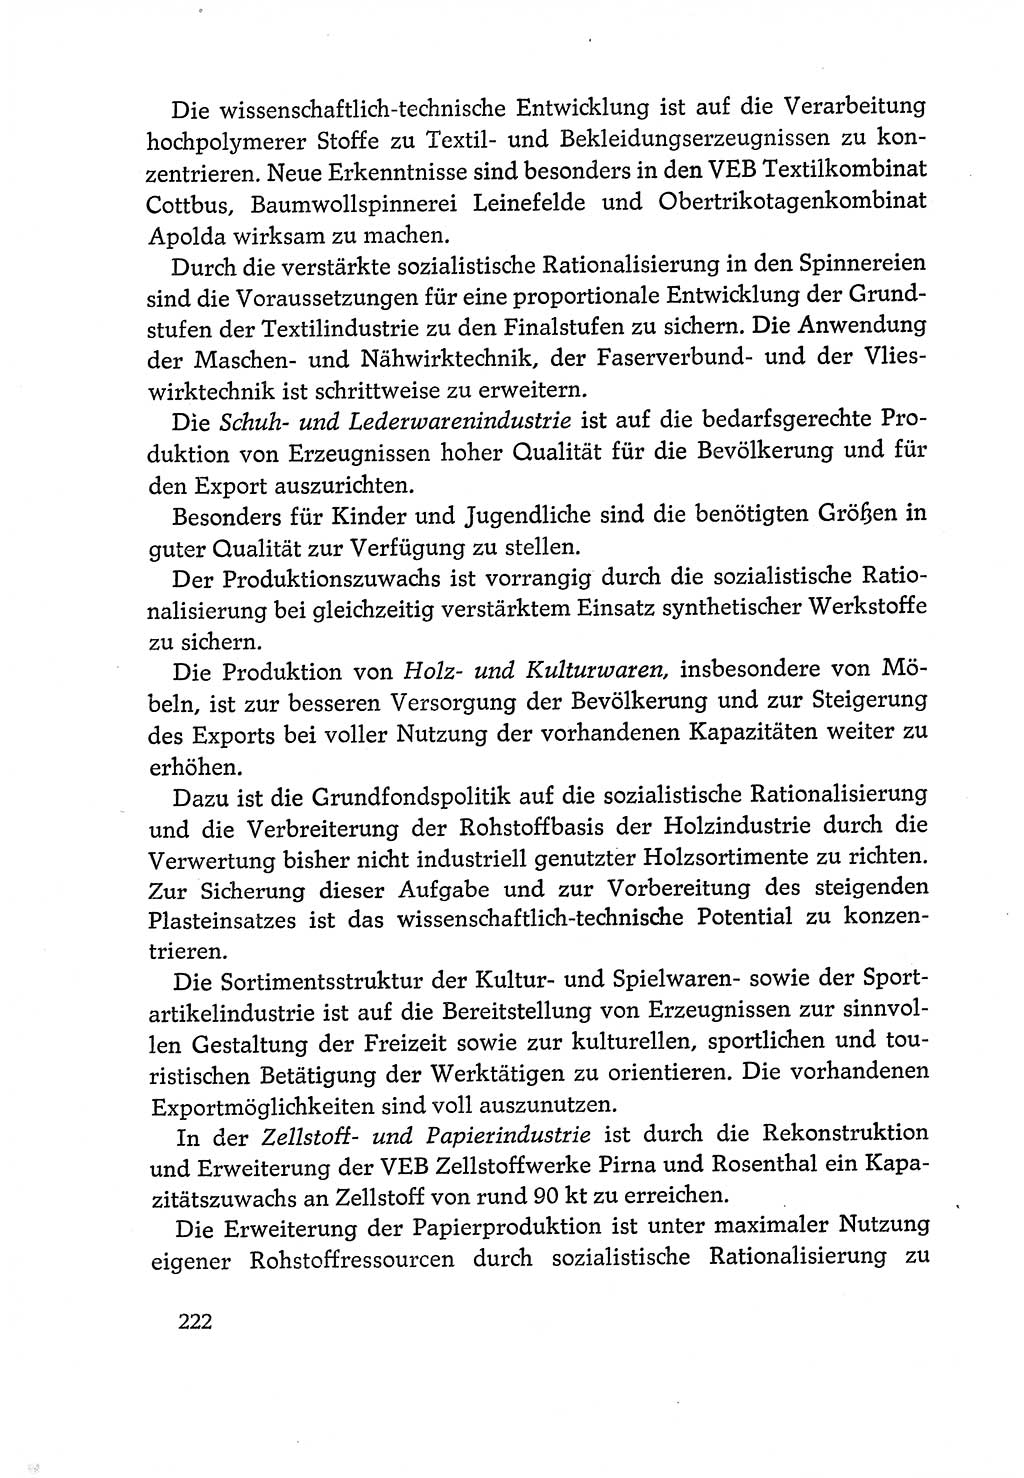 Dokumente der Sozialistischen Einheitspartei Deutschlands (SED) [Deutsche Demokratische Republik (DDR)] 1970-1971, Seite 222 (Dok. SED DDR 1970-1971, S. 222)